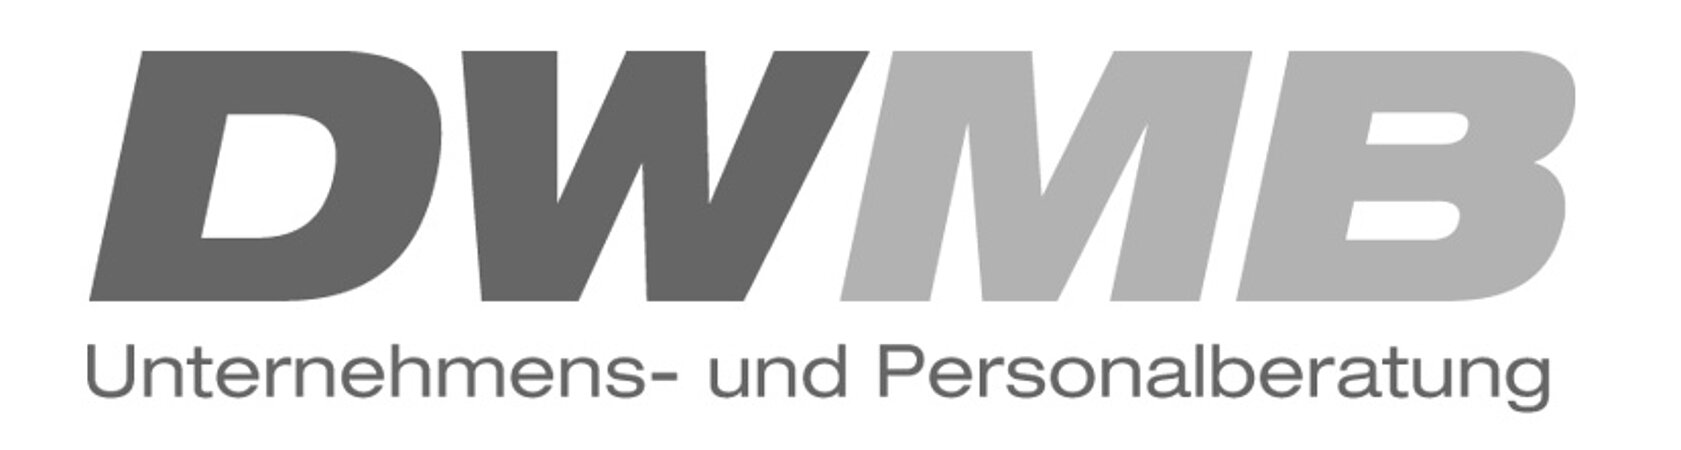 DWMB sucht Außendienstmitarbeiter / - mitarbeiterin (m/w/d) Mobile Wärme / Kälte / Luft - Region Baden-Württemberg